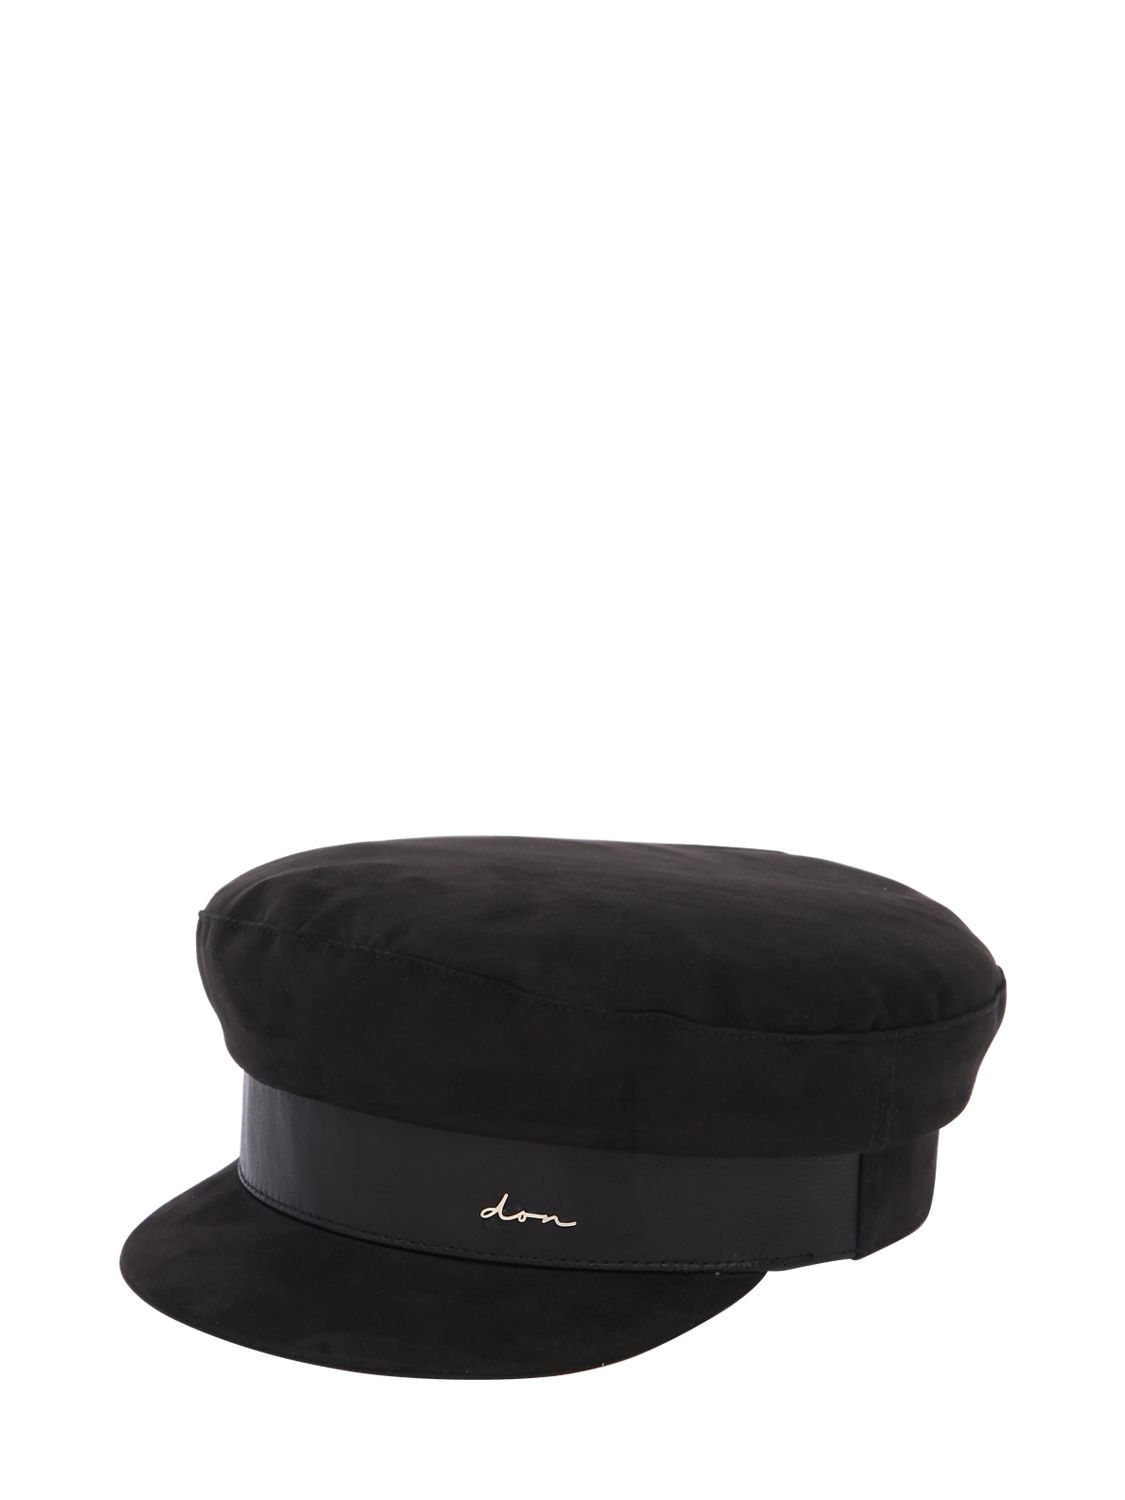 Don 麂皮&皮革黑色船长帽 In Black